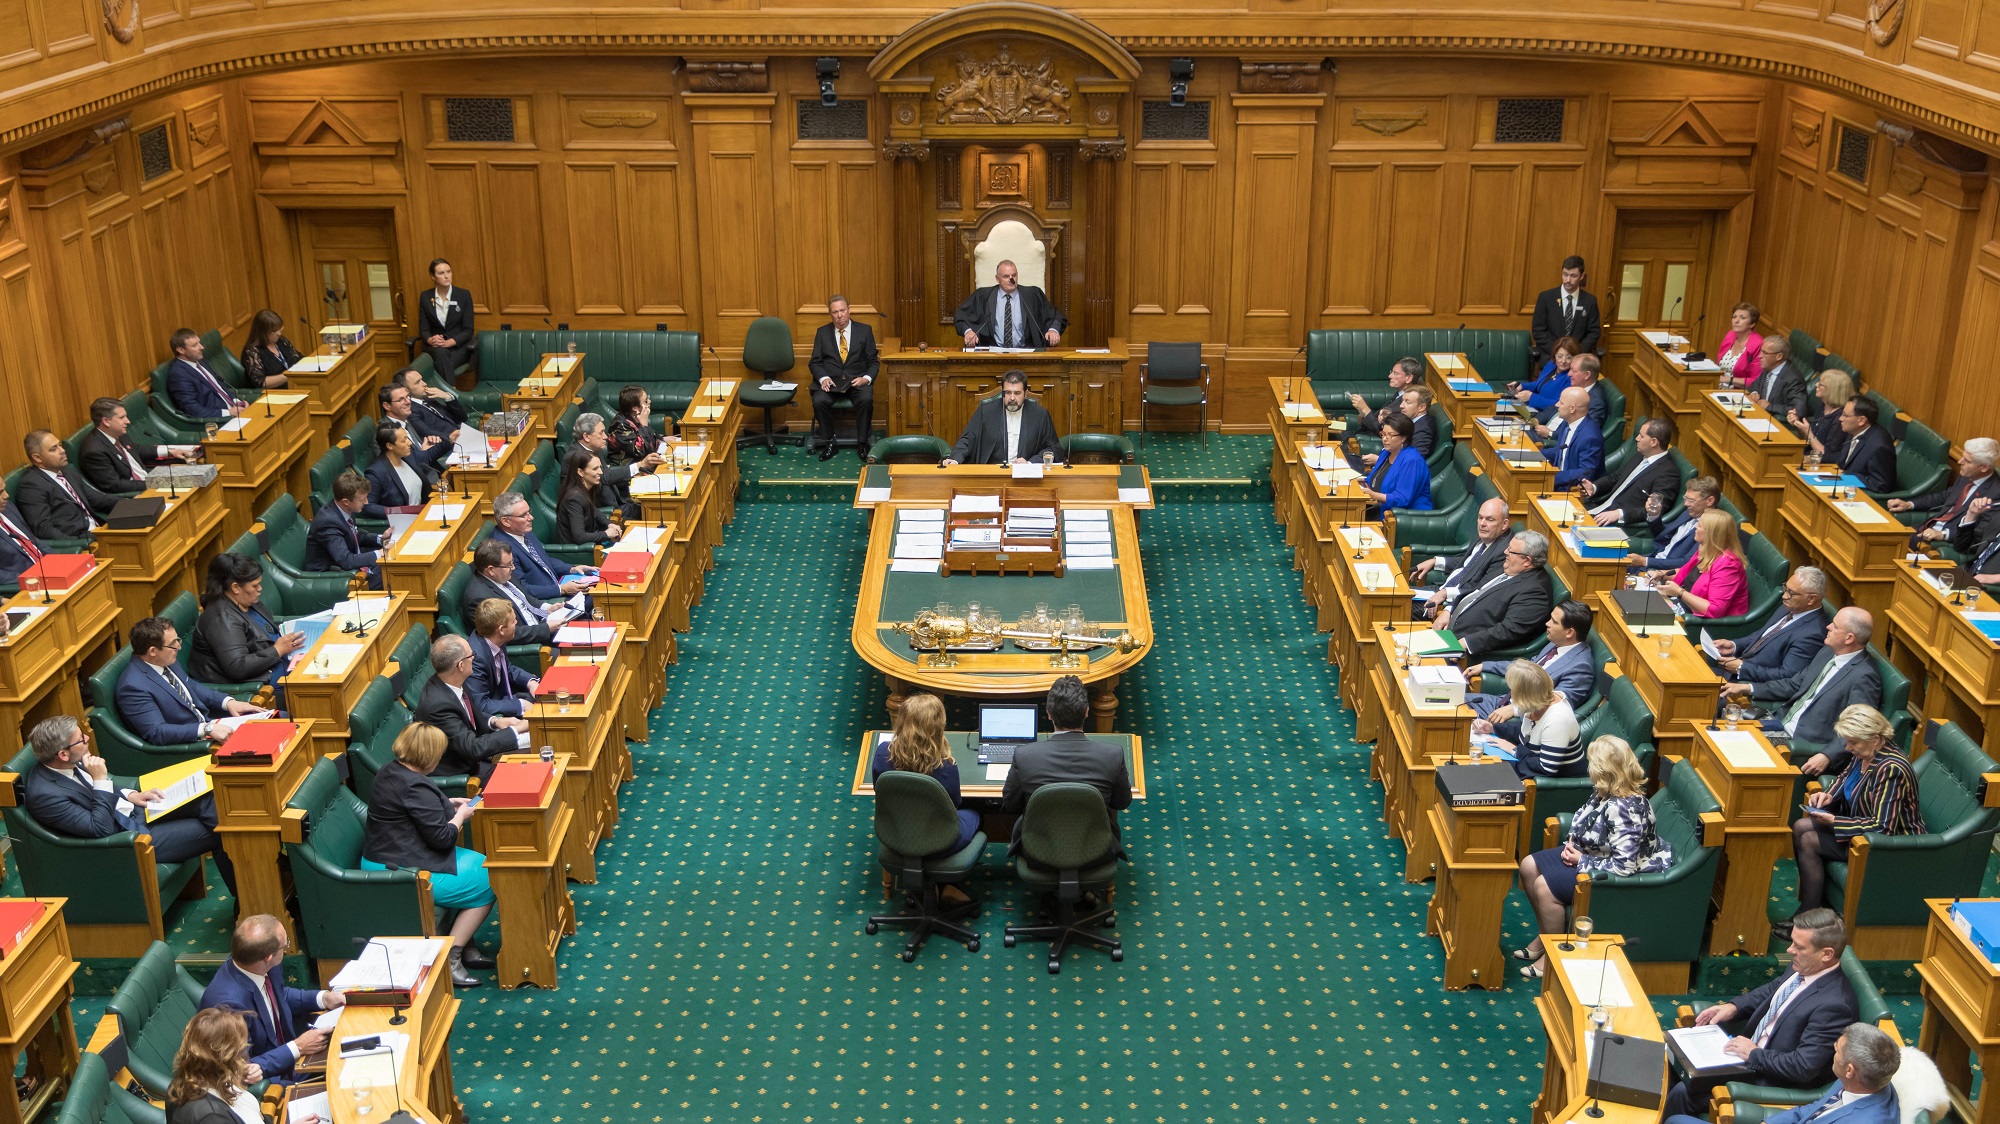 Здания органов местного самоуправления. Однопалатный парламент новой Зеландии. Правительство новой Зеландии. Парламент Бразилии здание парламента. Палата представителей новой Зеландии.